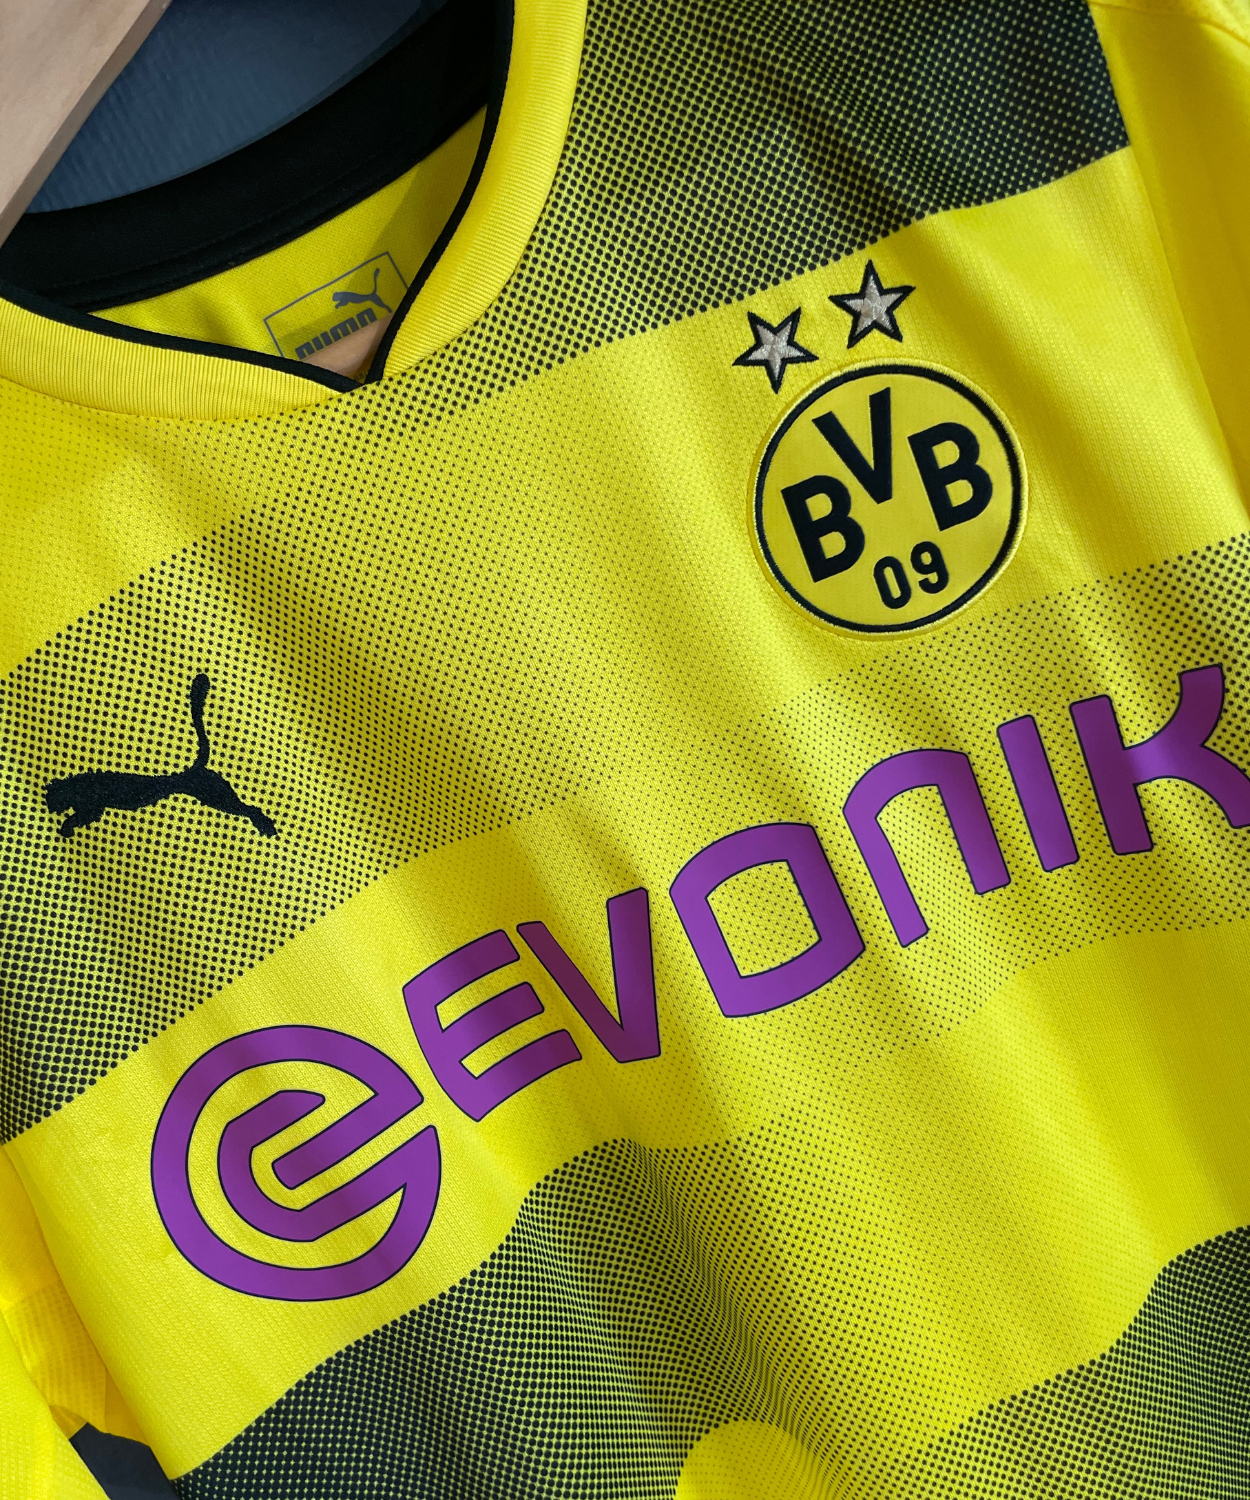 Borussia Dortmund 2017/18 Reus Home Kit (M)